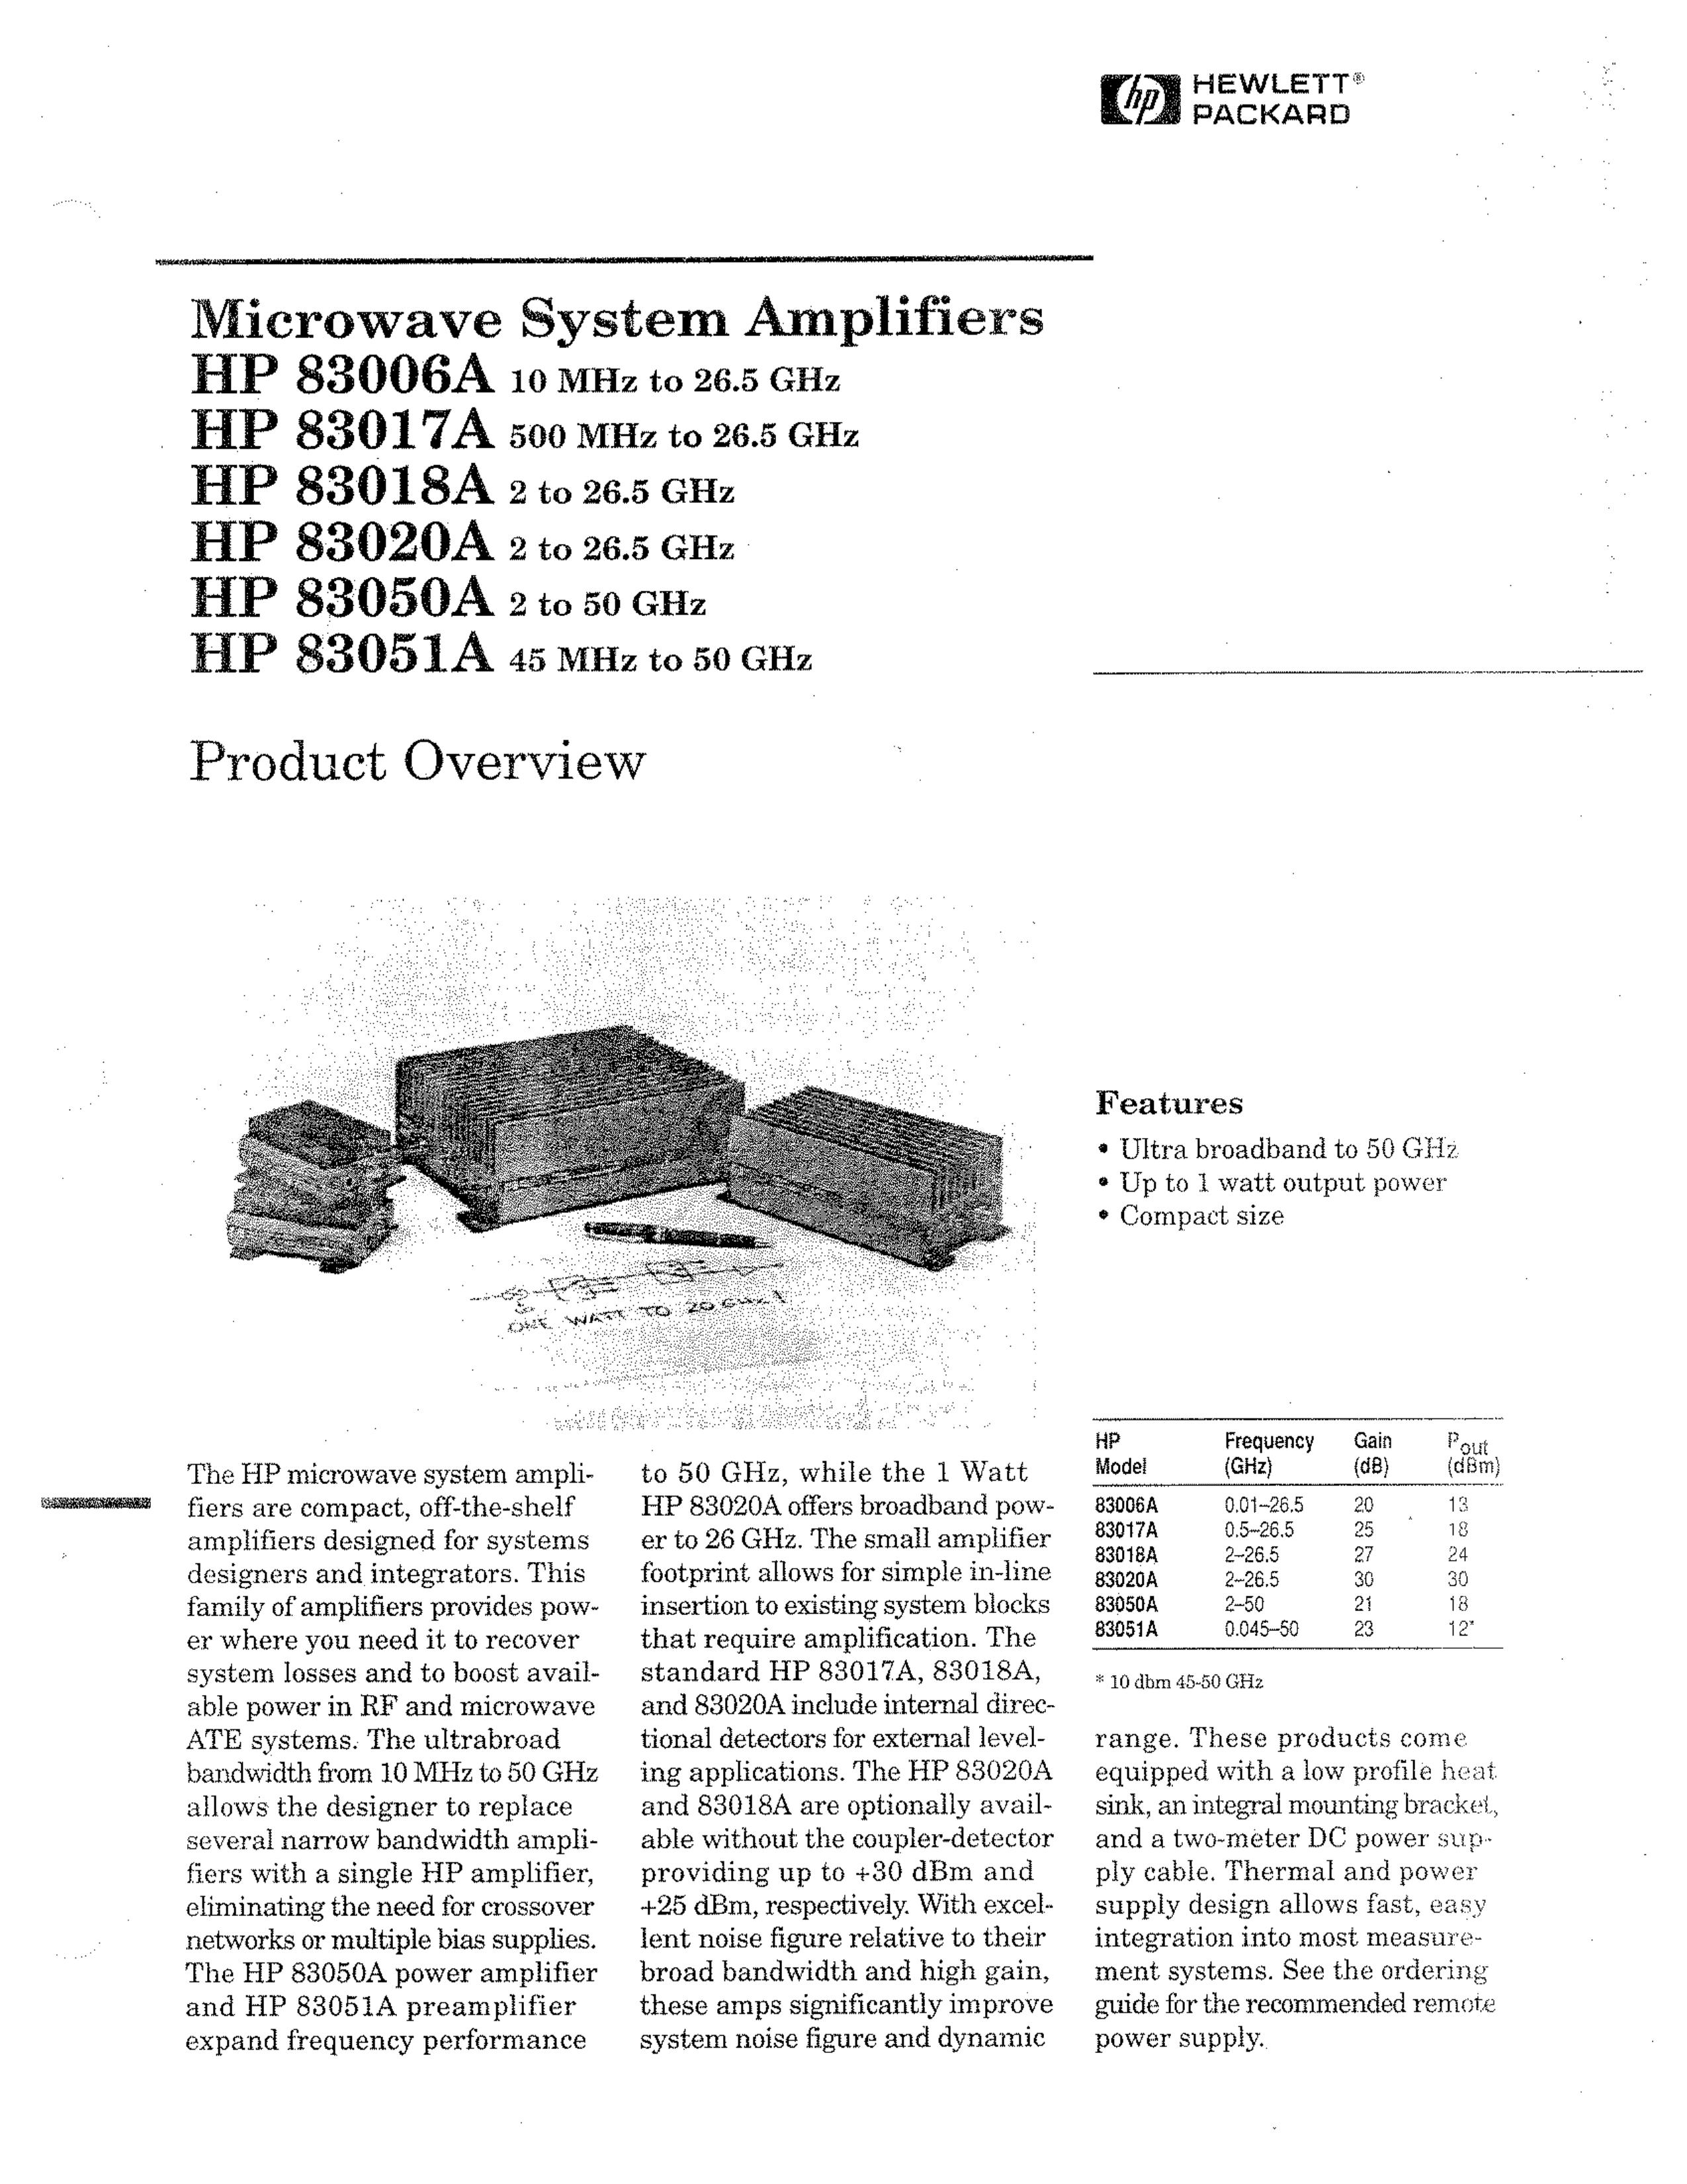 HP (Hewlett-Packard) HP 83051A Ventilation Hood User Manual